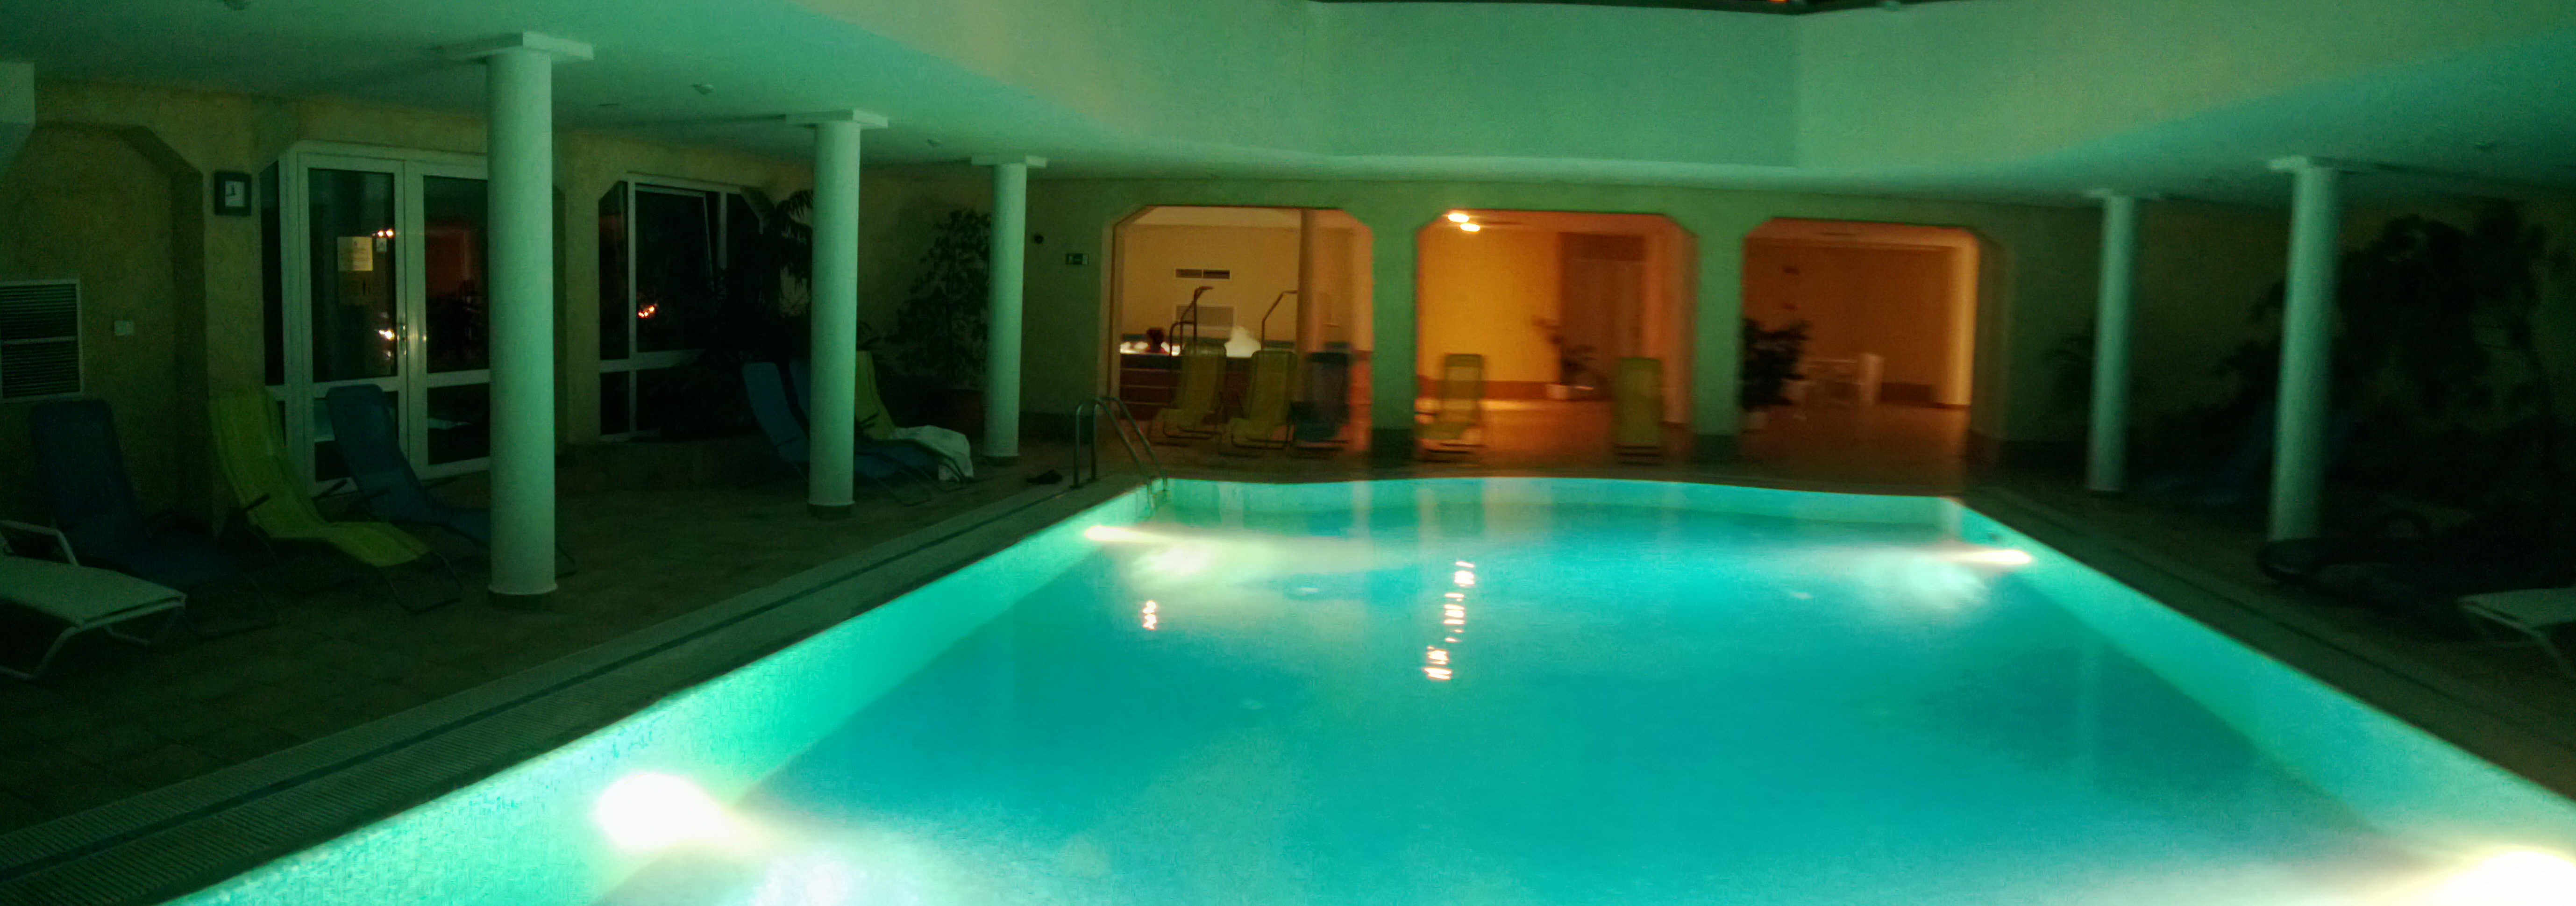 Hasik Hotel - Pool